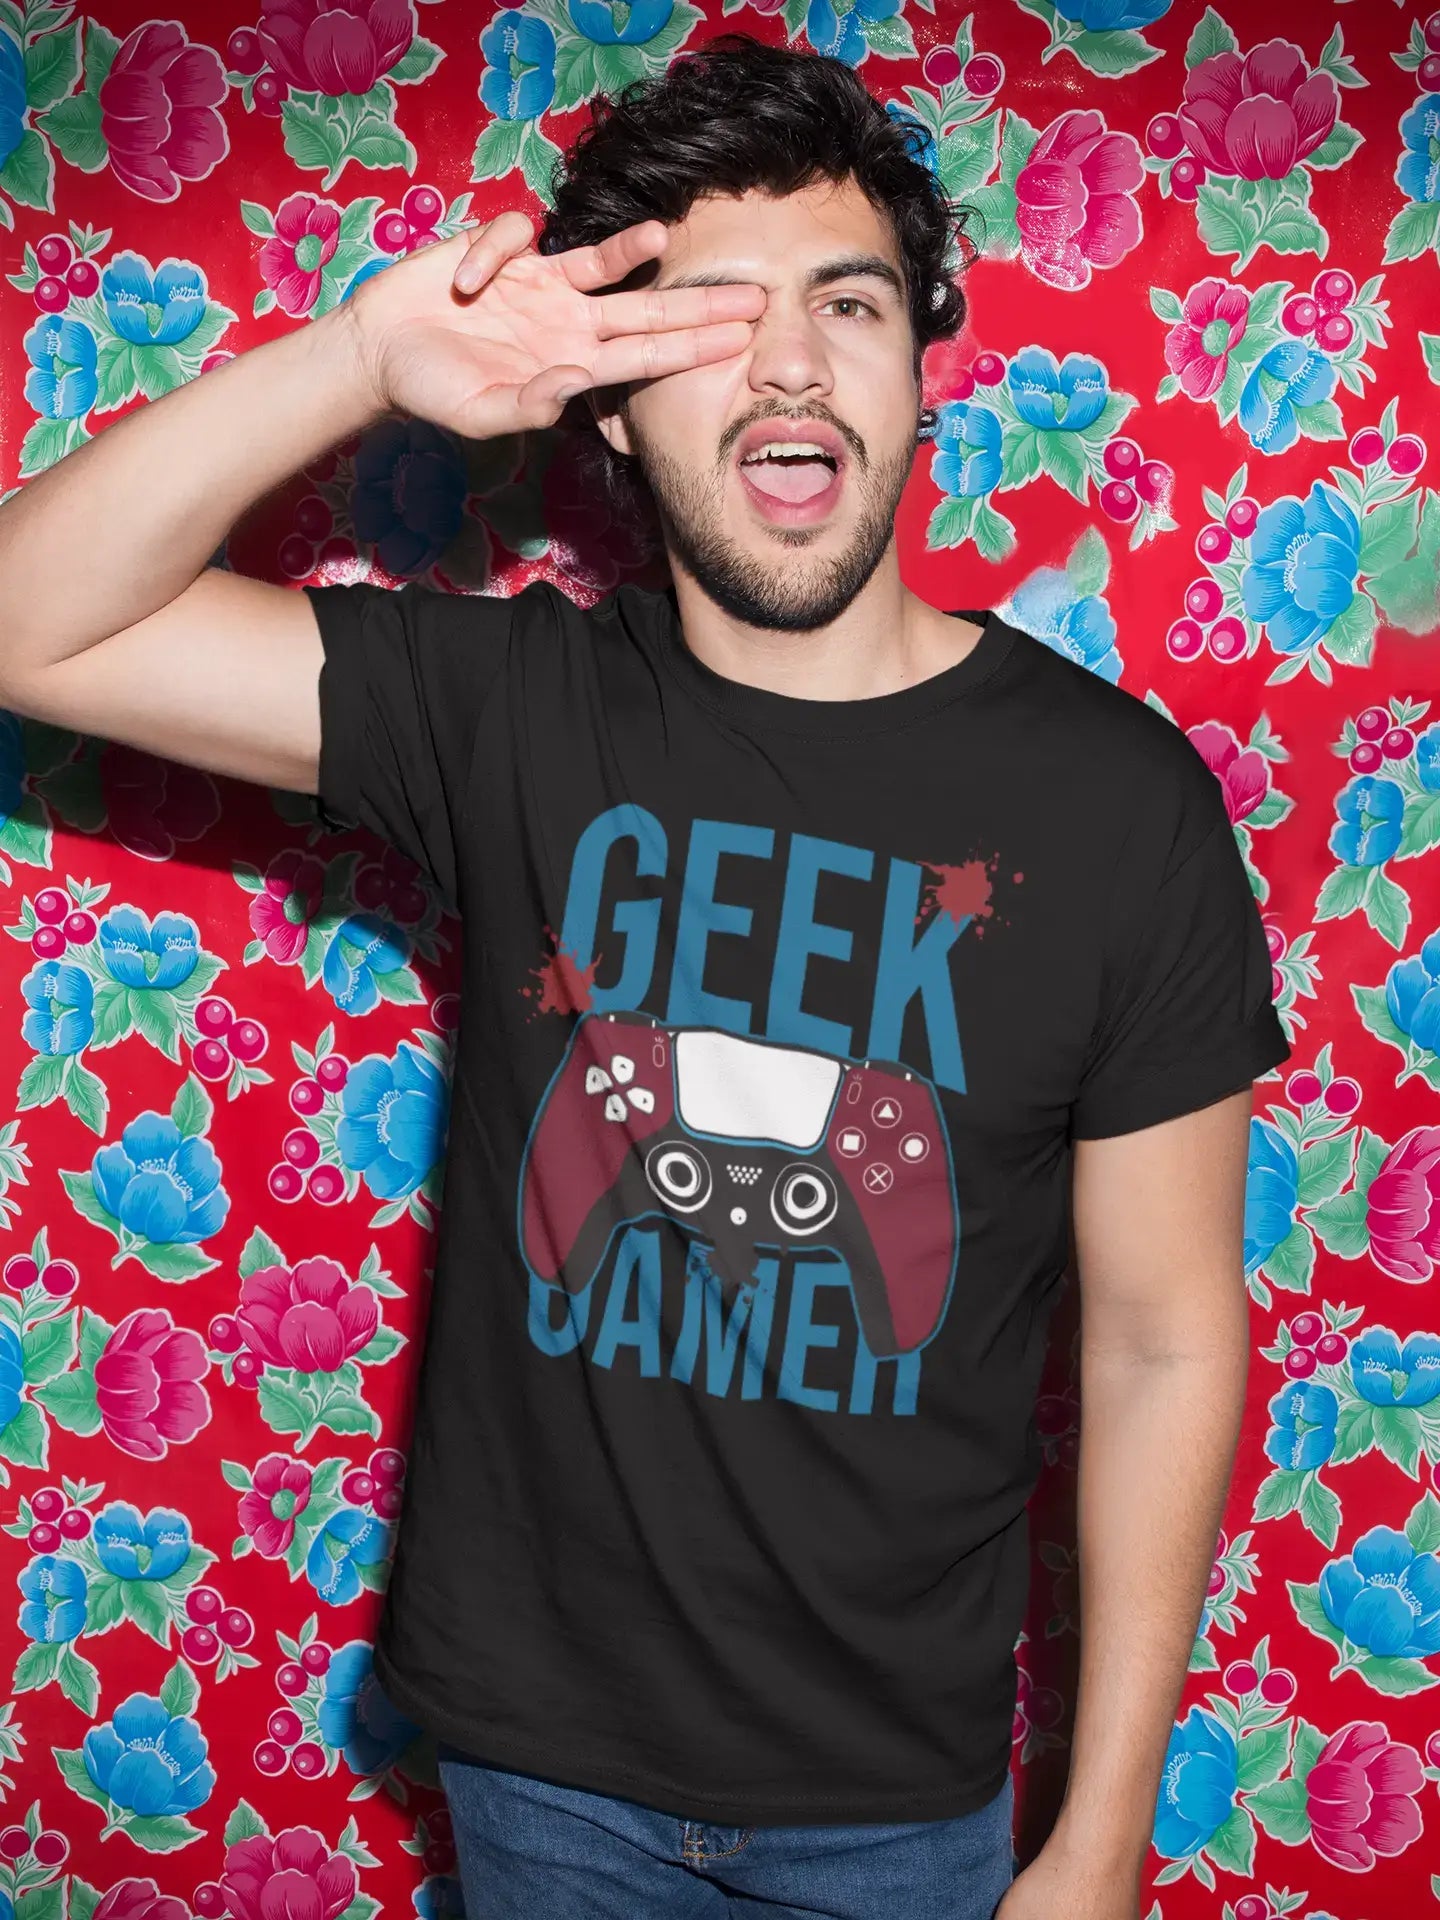 ULTRABASIC Men's Gaming T-Shirt Gamer - Video Games Player Tee Shirt